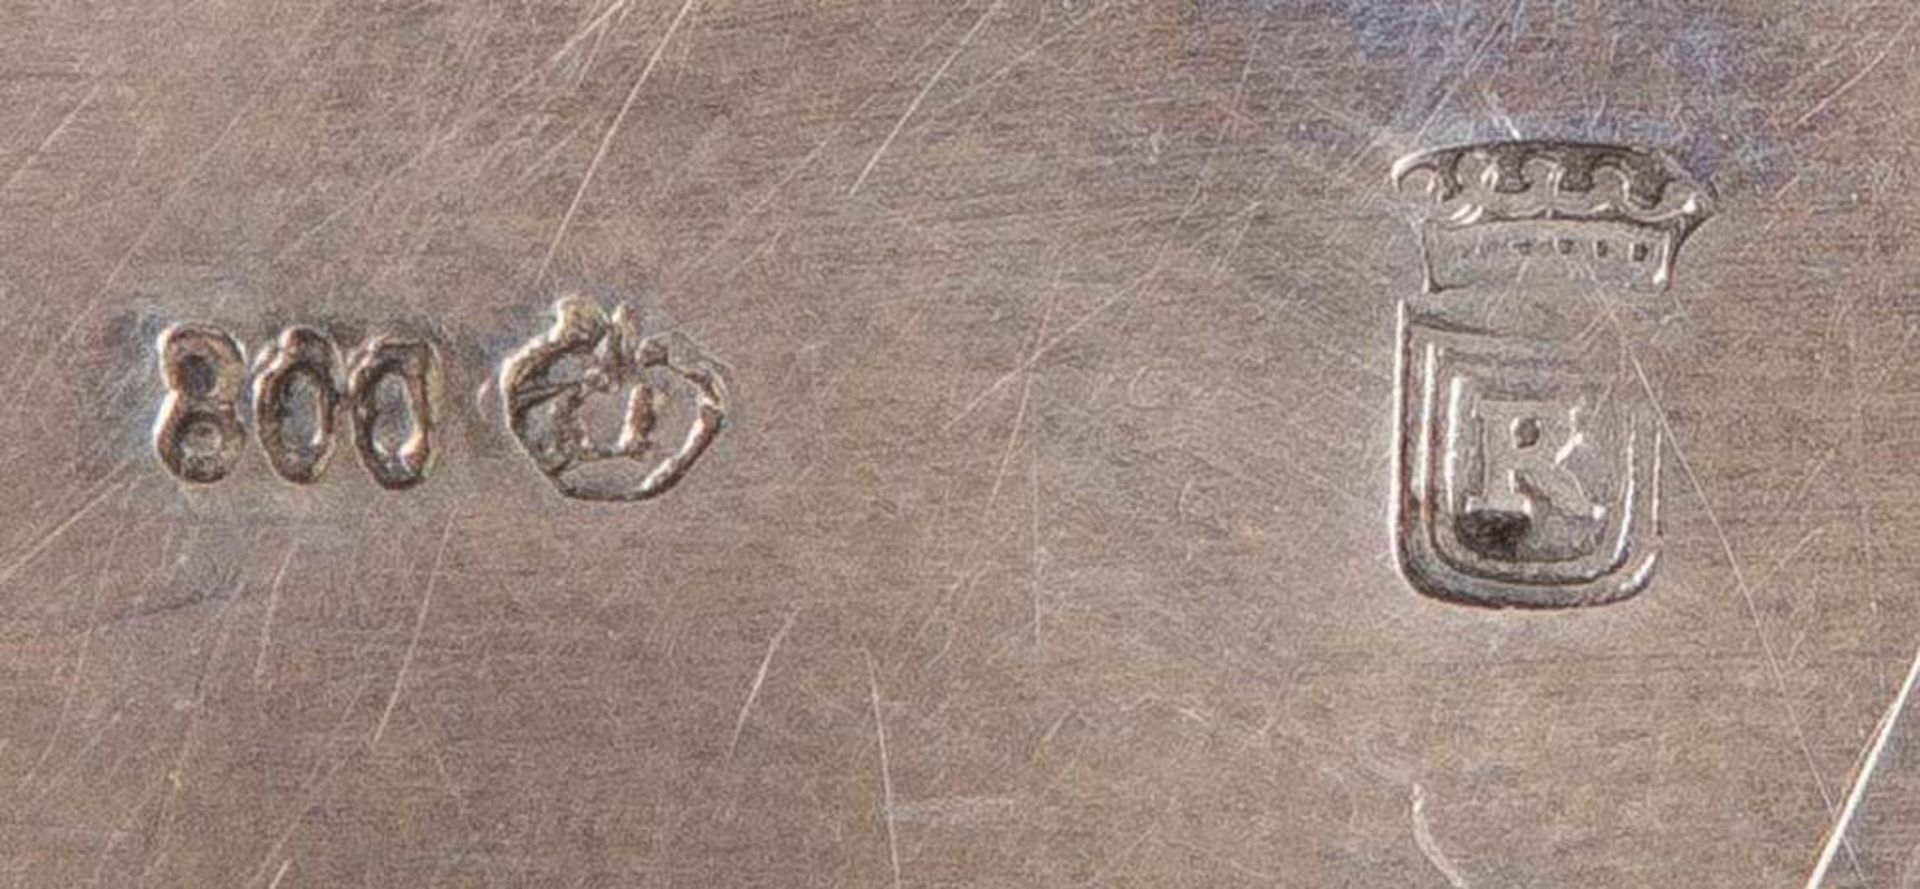 Ovale Historismus-Deckeldose. Deutsch 20. Jh. Silber, ca. 380 g, H=8 cm, B=17 cm, T=13,5 cm. - Bild 2 aus 2